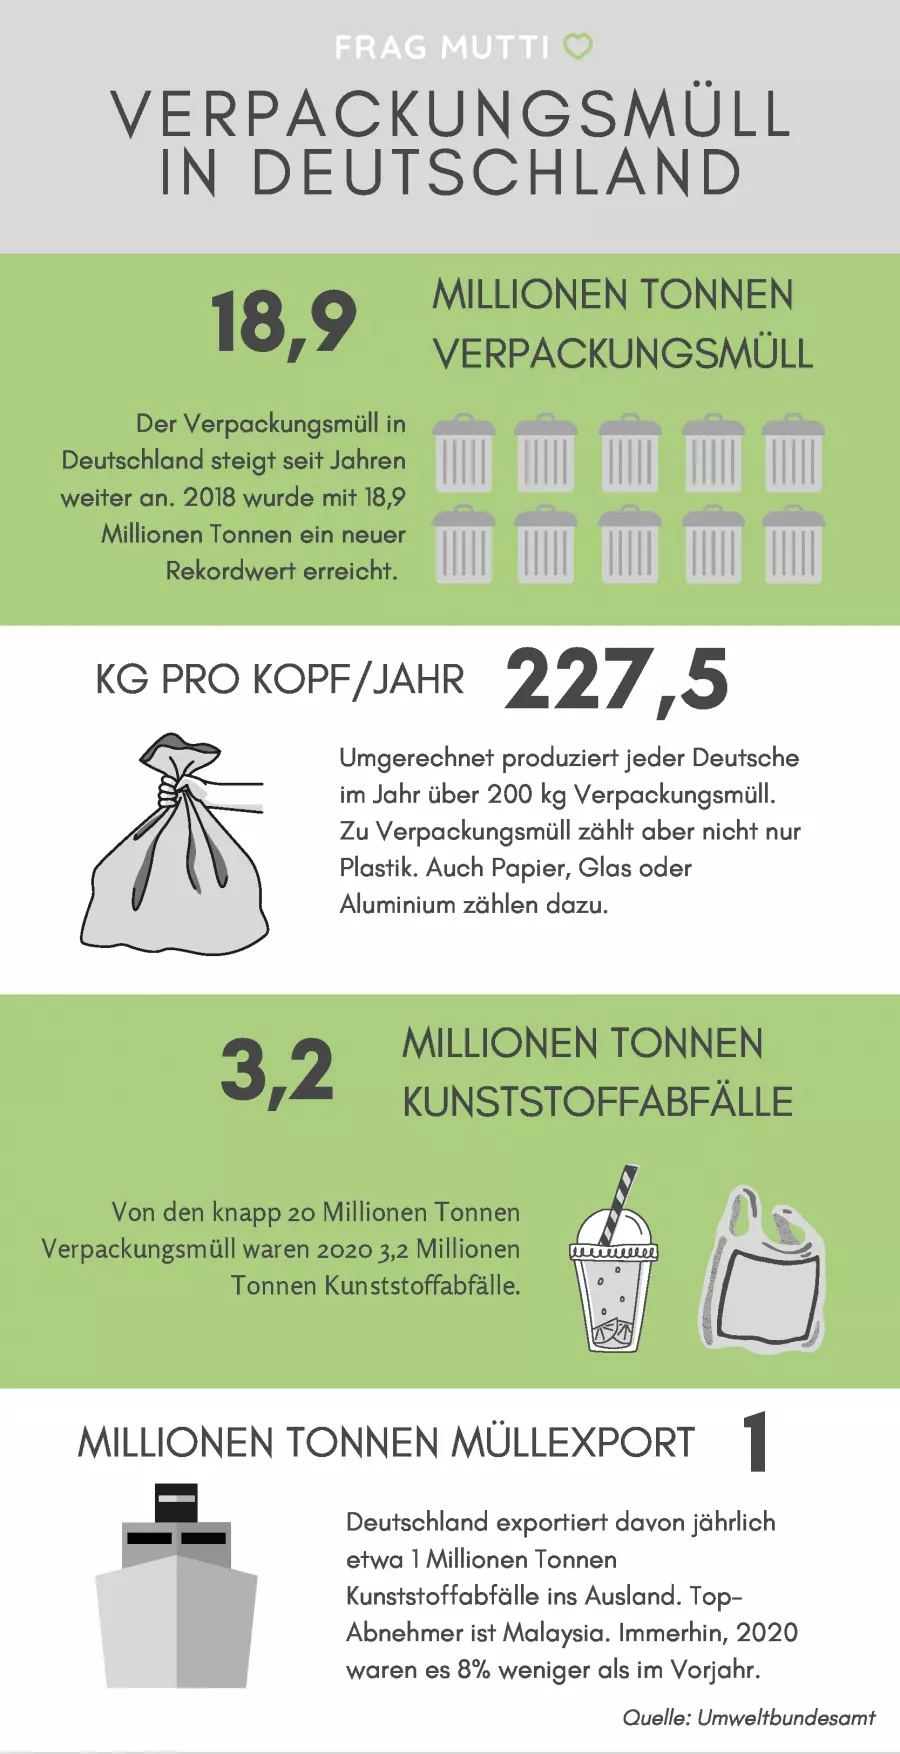 Zu Verpackungsmüll zählt nicht nur Plastik, auch Glas, Papier und Aluminium zählen dazu. Und davon produziert jeder Deutsche über 200 Kilogramm pro Jahr. 